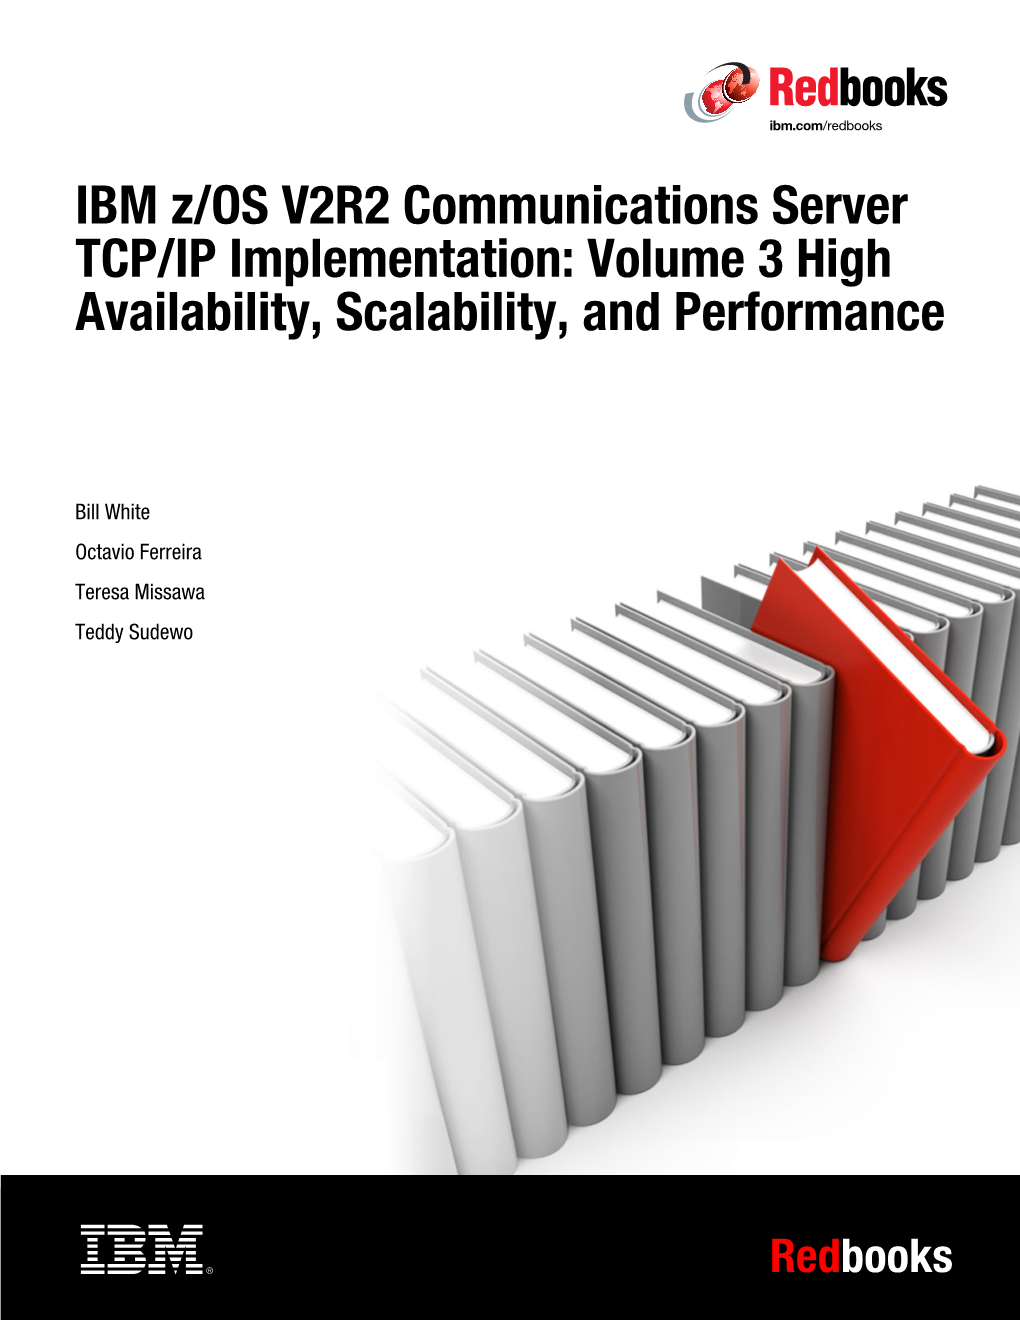 IBM Z/OS V2R2 CS TCP/IP Implementation Volume 3